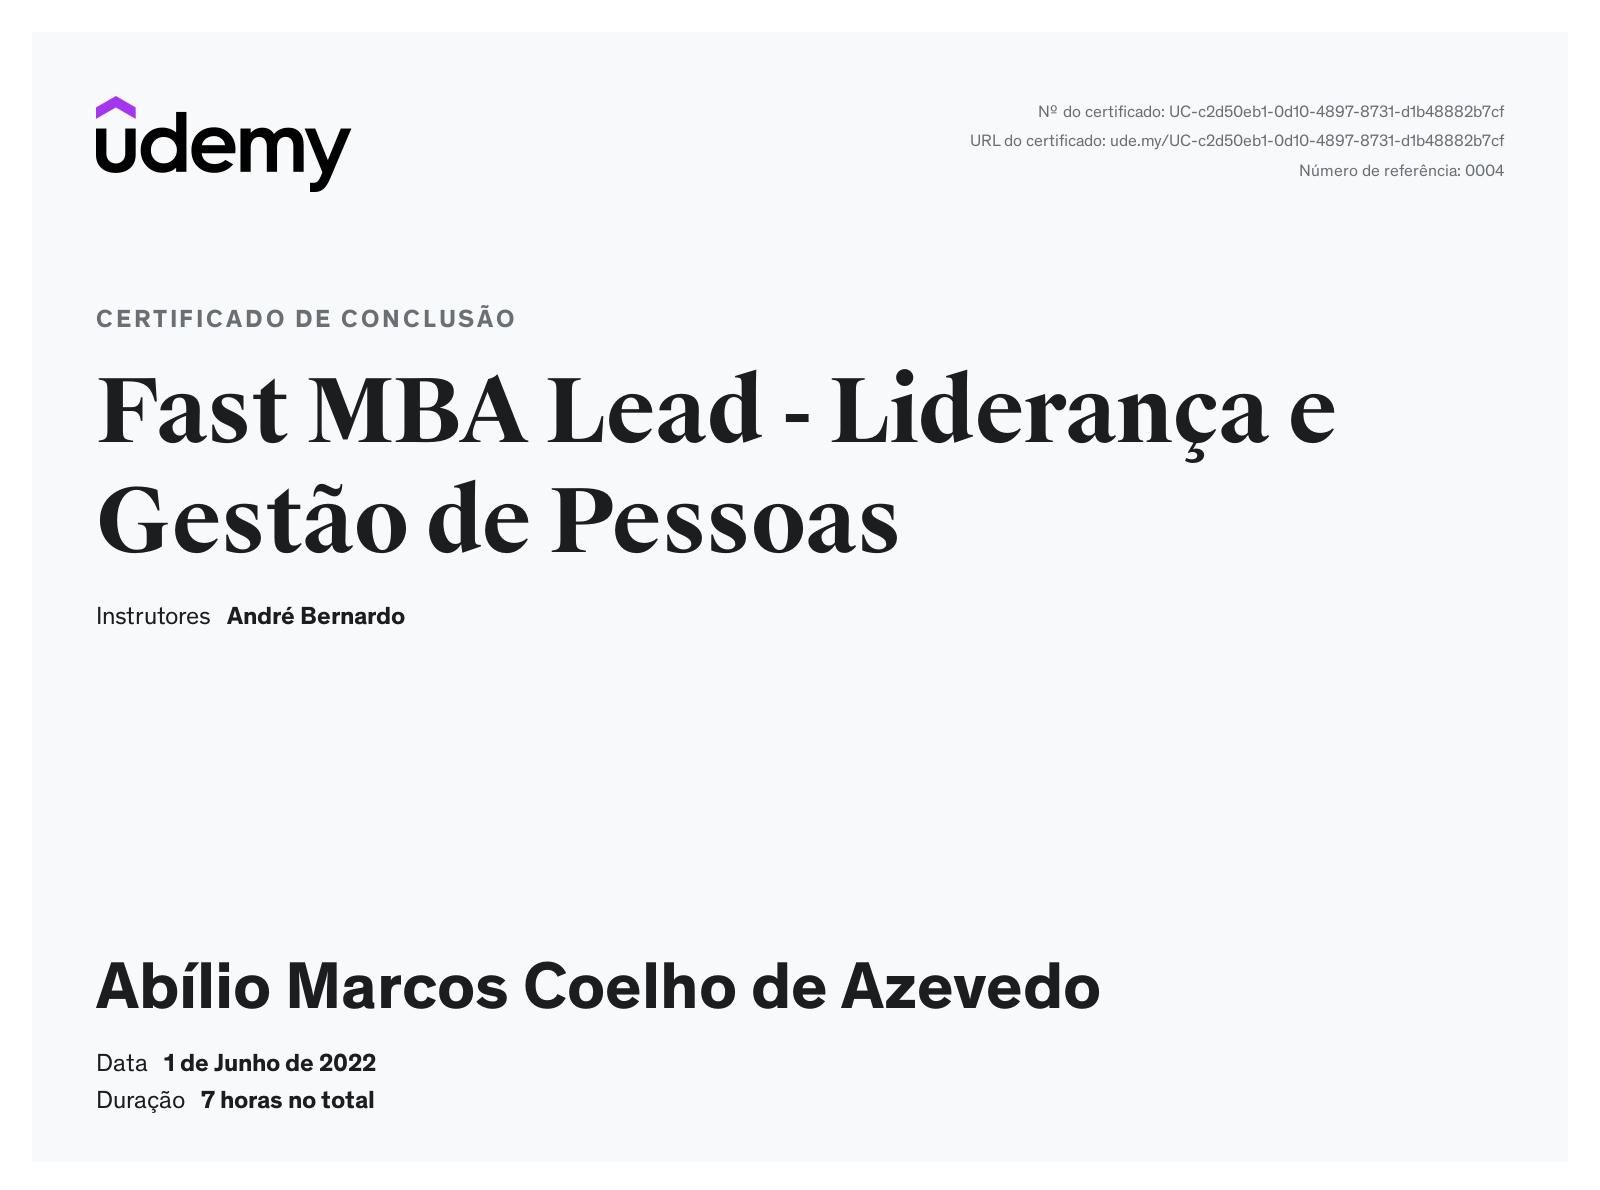 Fast MBA Lead - Liderança e Gestão de Pessoas